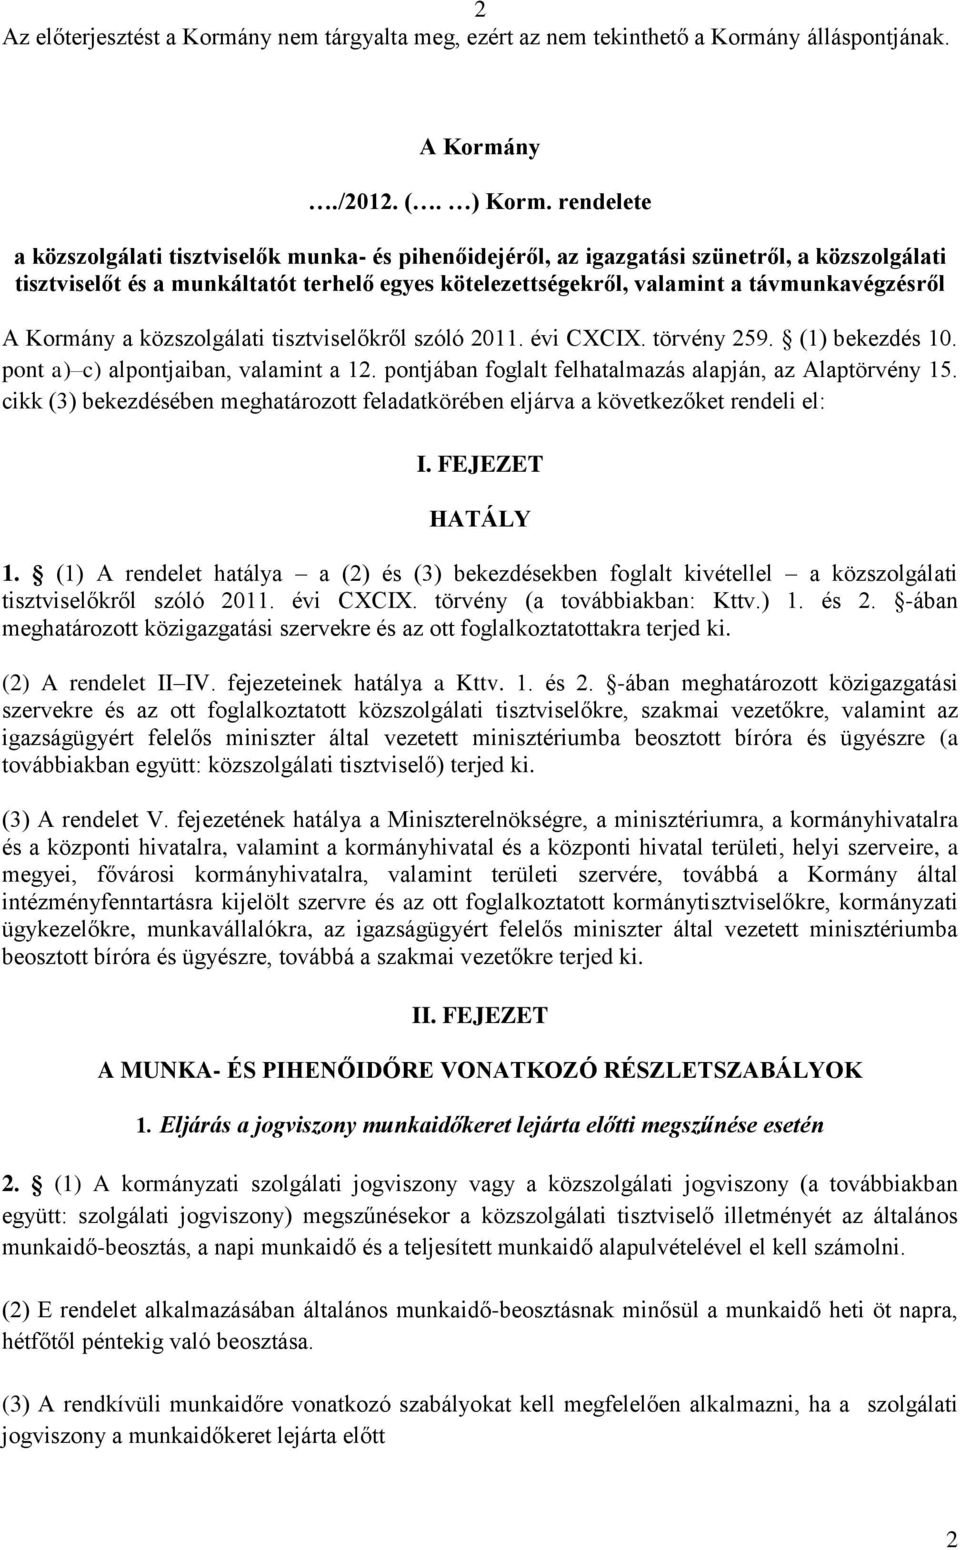 A Kormány a közszolgálati tisztviselőkről szóló 2011. évi CXCIX. törvény 259. (1) bekezdés 10. pont a) c) alpontjaiban, valamint a 12. pontjában foglalt felhatalmazás alapján, az Alaptörvény 15.